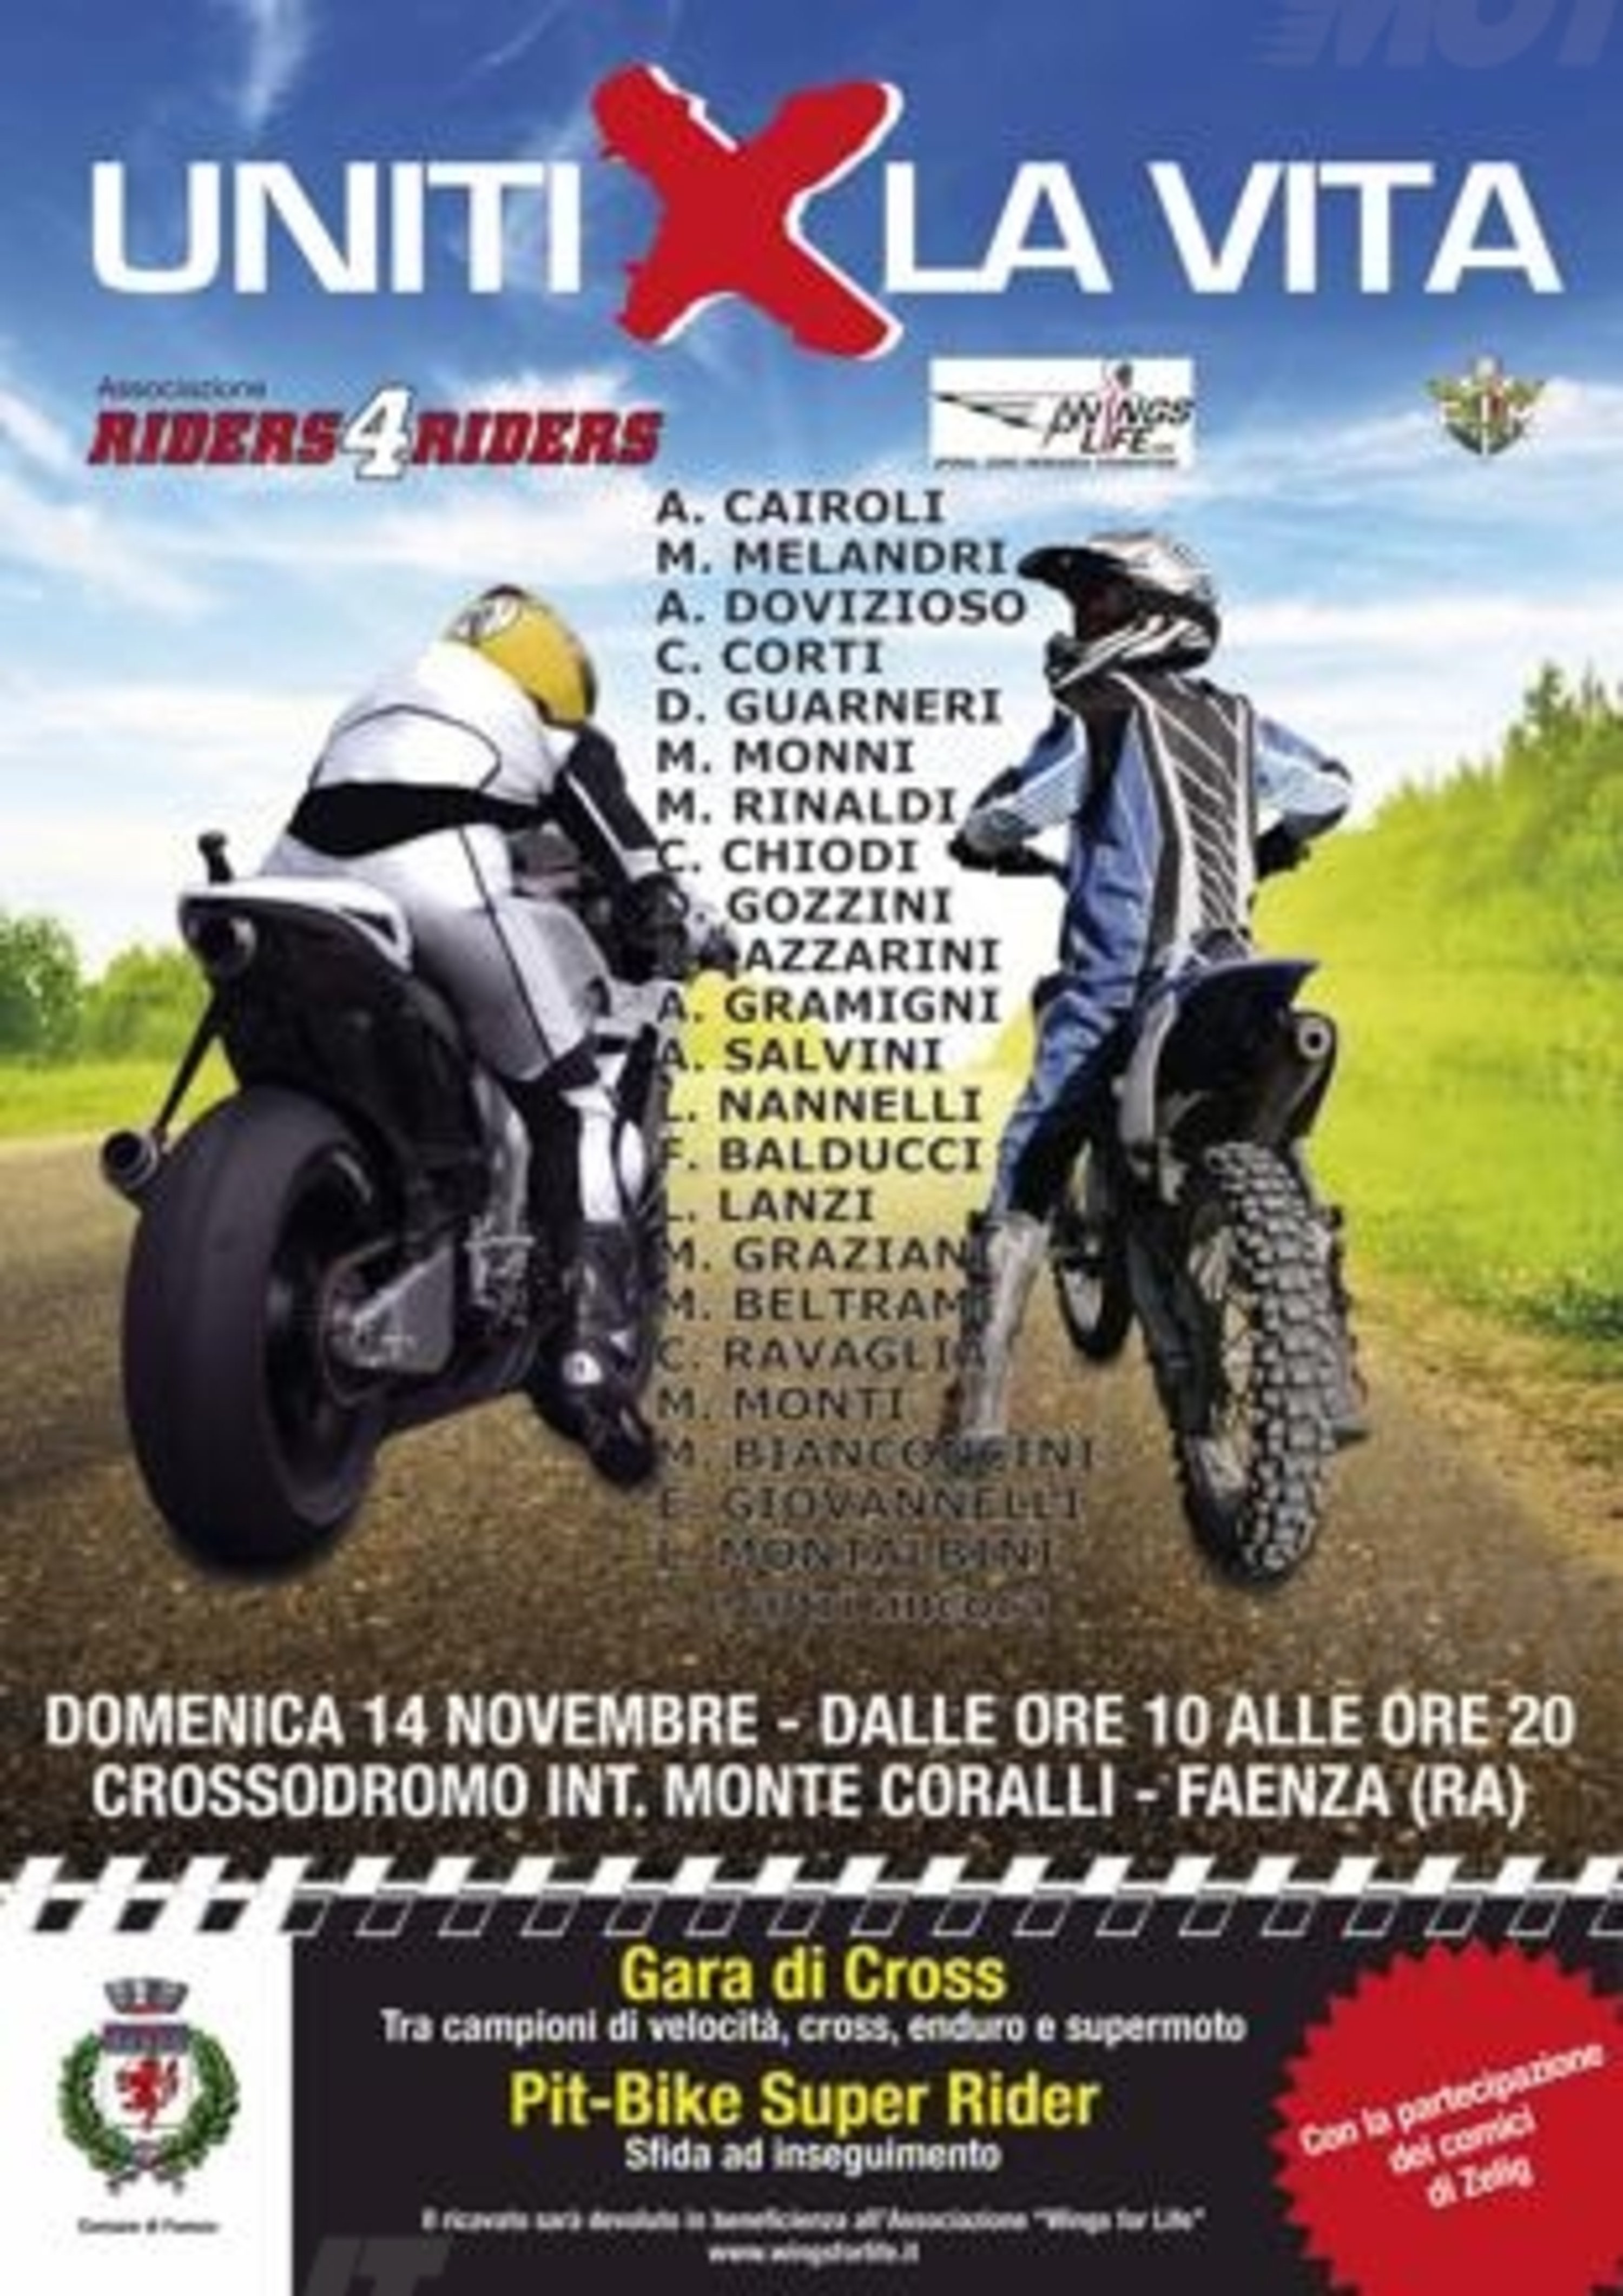 Domenica 14 novembre a Faenza, Uniti x la Vita